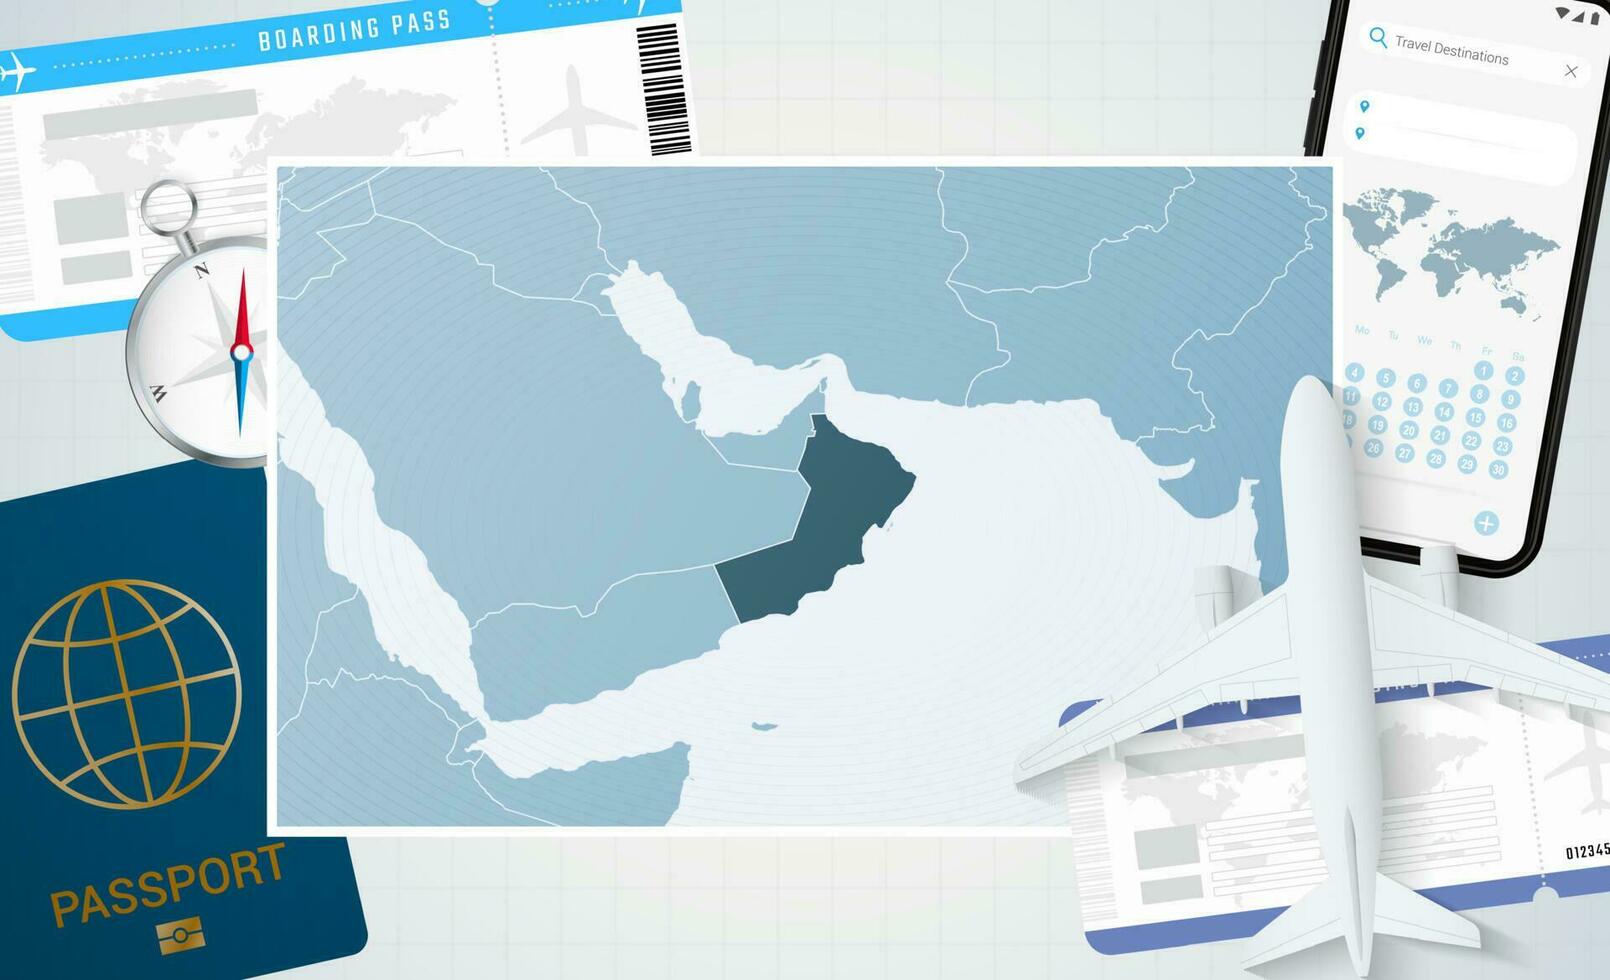 reis naar Oman, illustratie met een kaart van Oman. achtergrond met vliegtuig, cel telefoon, paspoort, kompas en kaartjes. vector